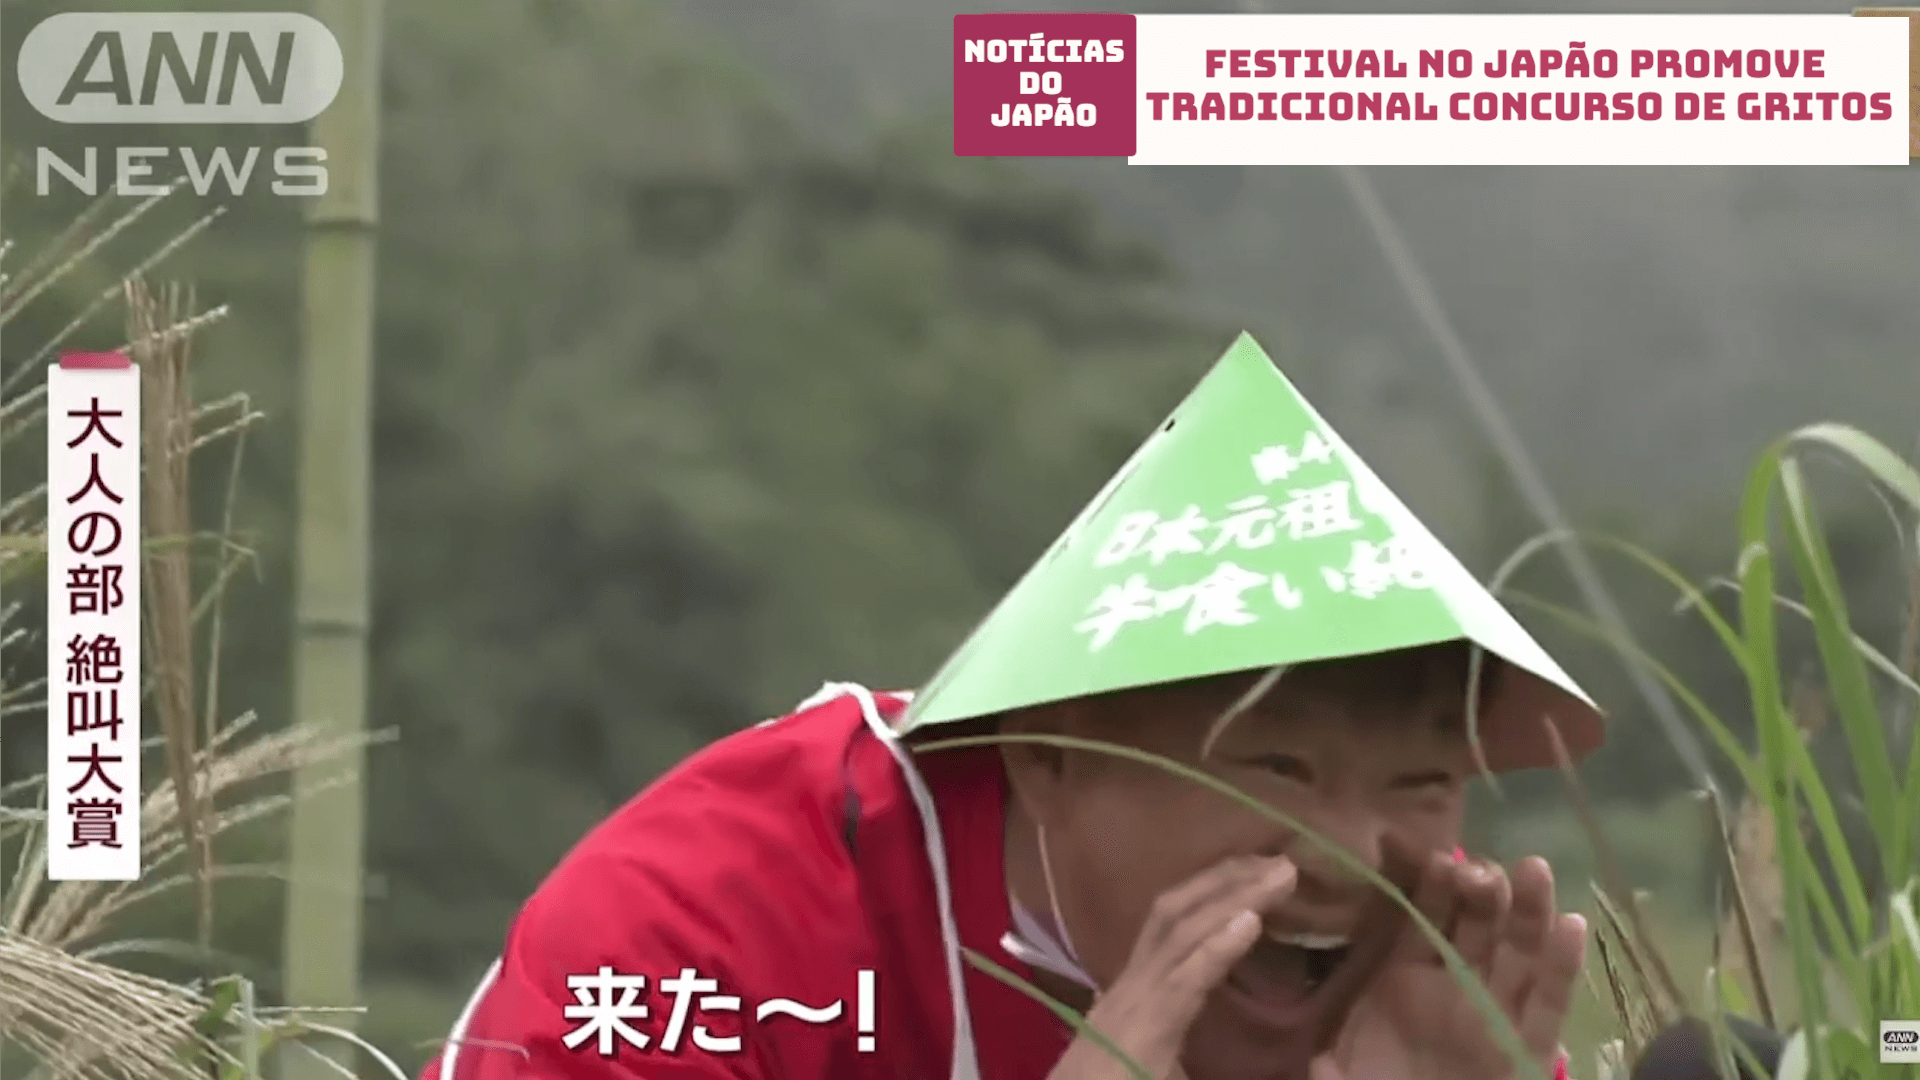 Festival no Japão promove tradicional concurso de gritos